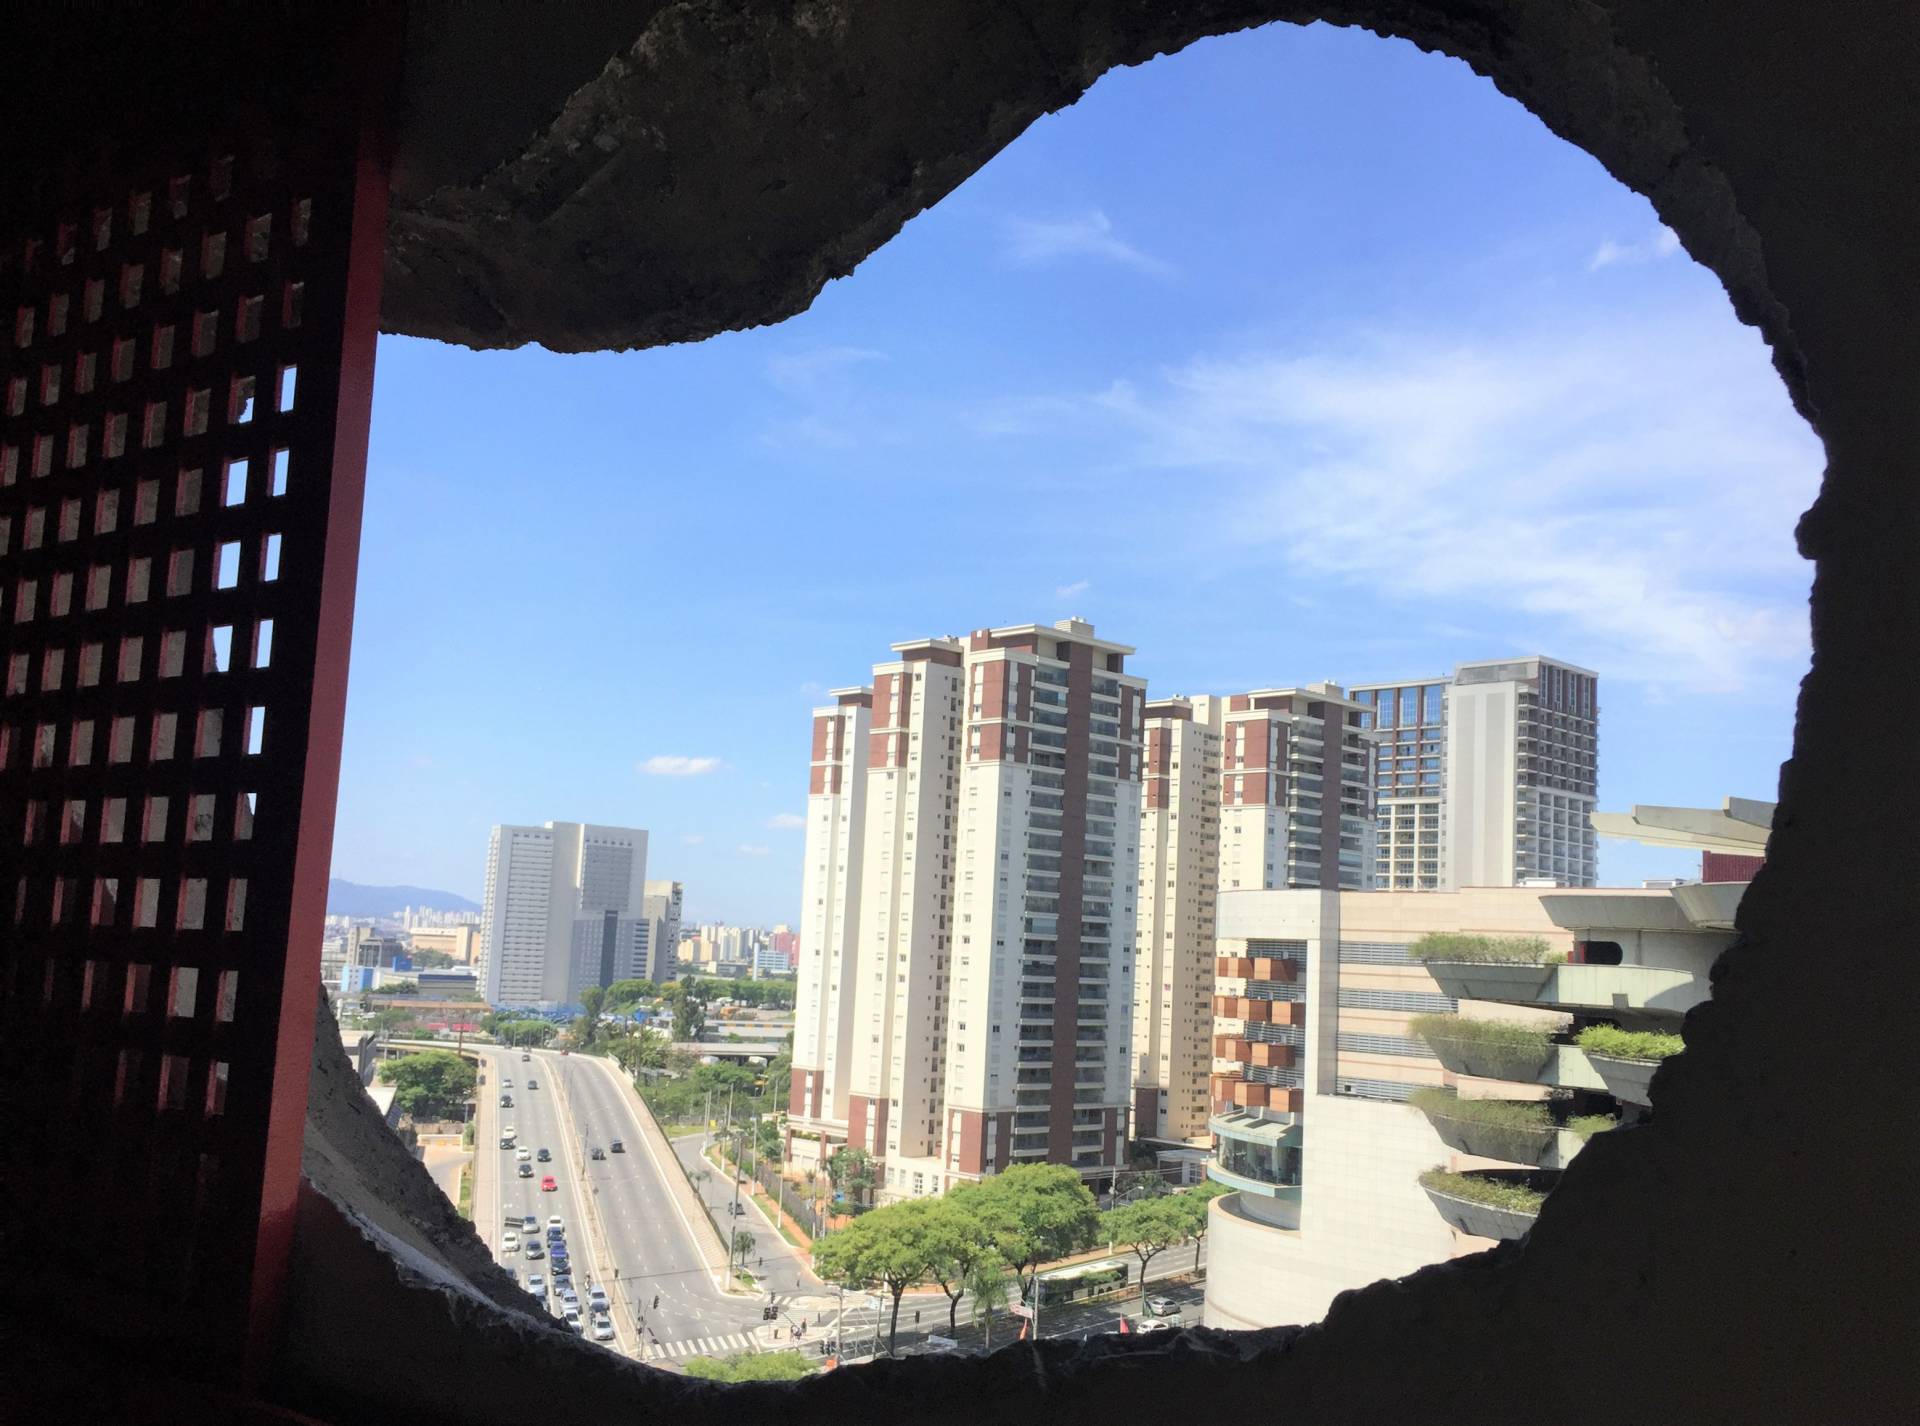 São Paulo vista seen through hole in a wall